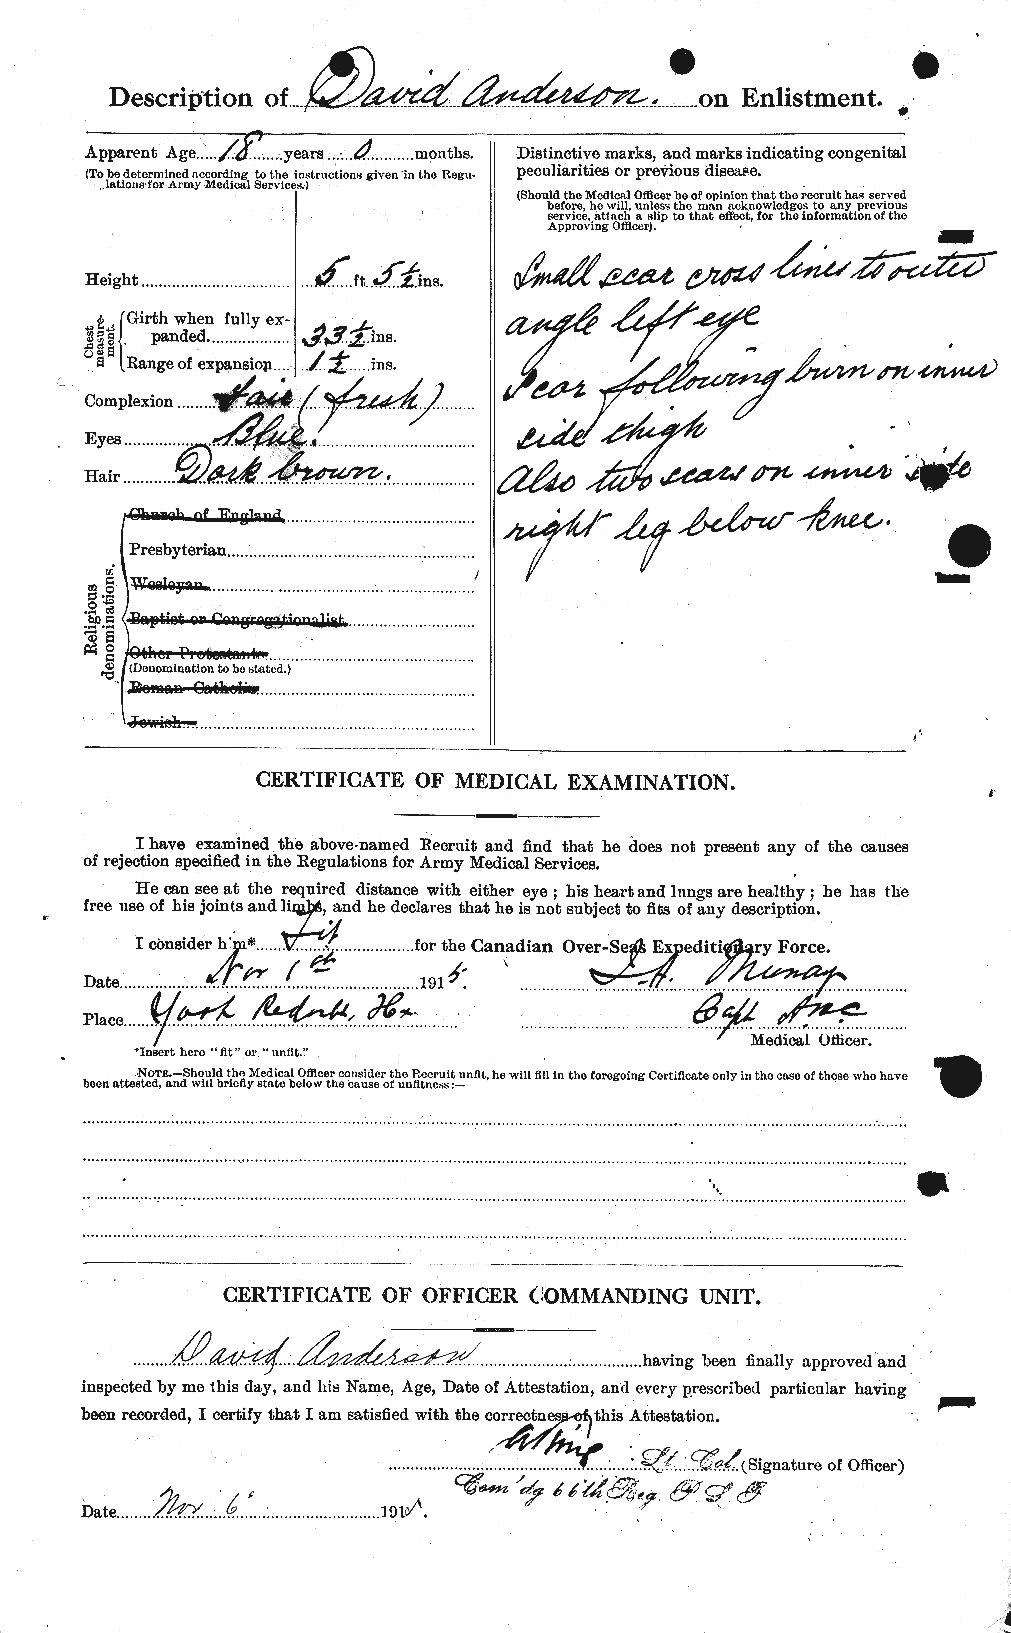 Dossiers du Personnel de la Première Guerre mondiale - CEC 210025b